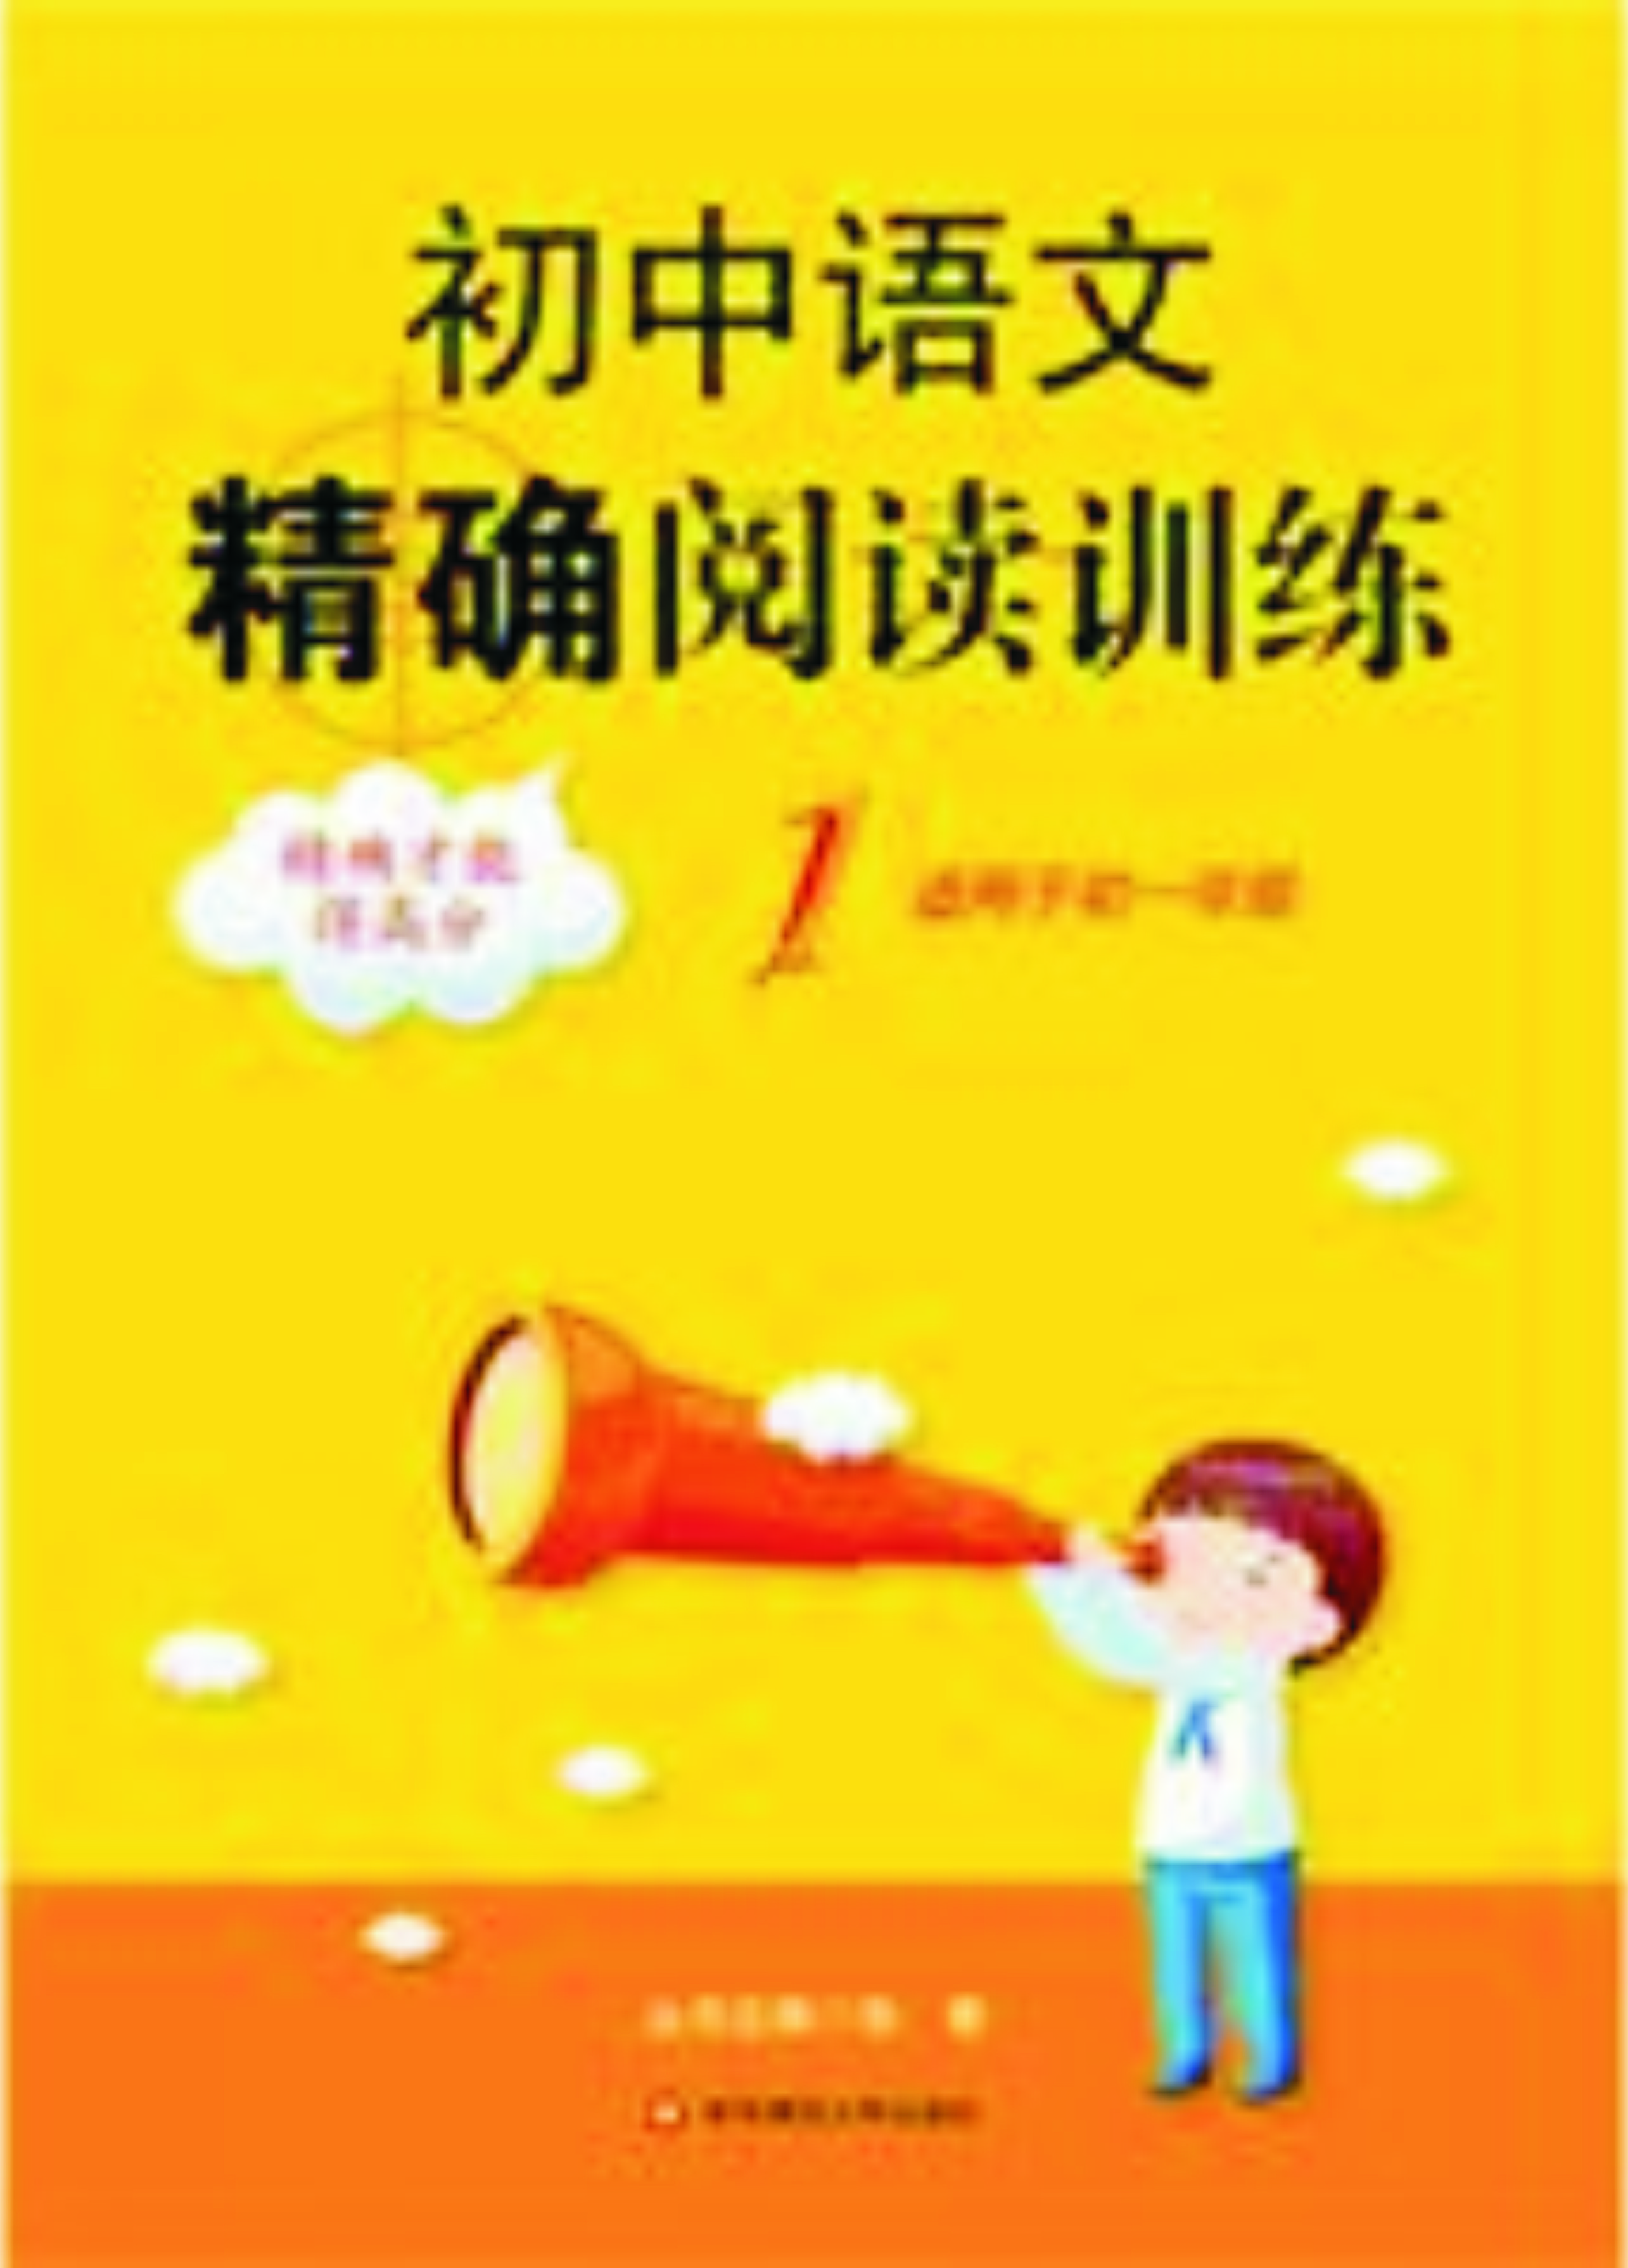 國中語文精確閱讀訓練1